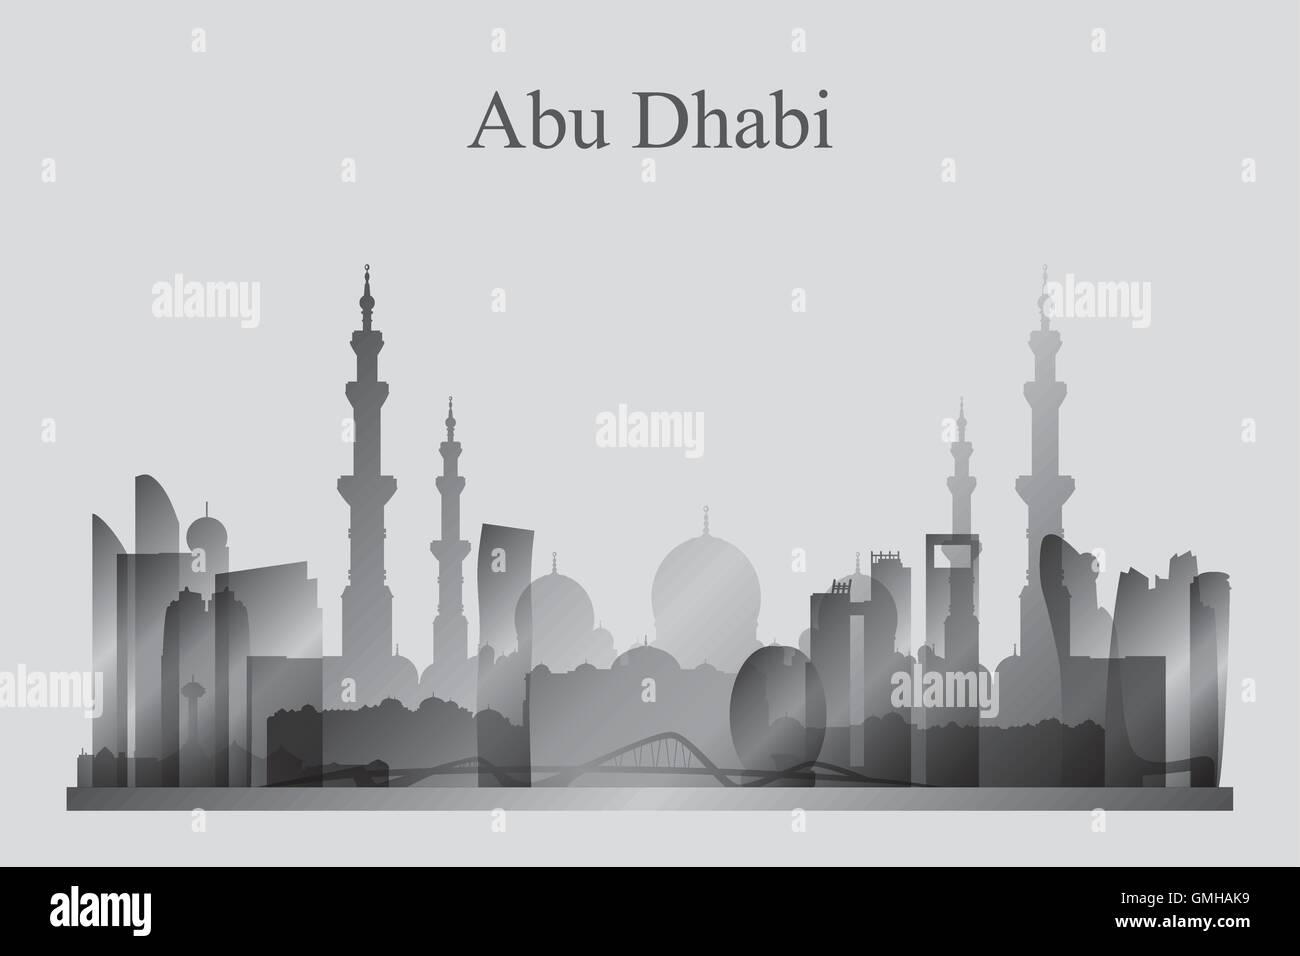 Abu Dhabi Stadt Skyline Silhouette in Graustufen Stock Vektor